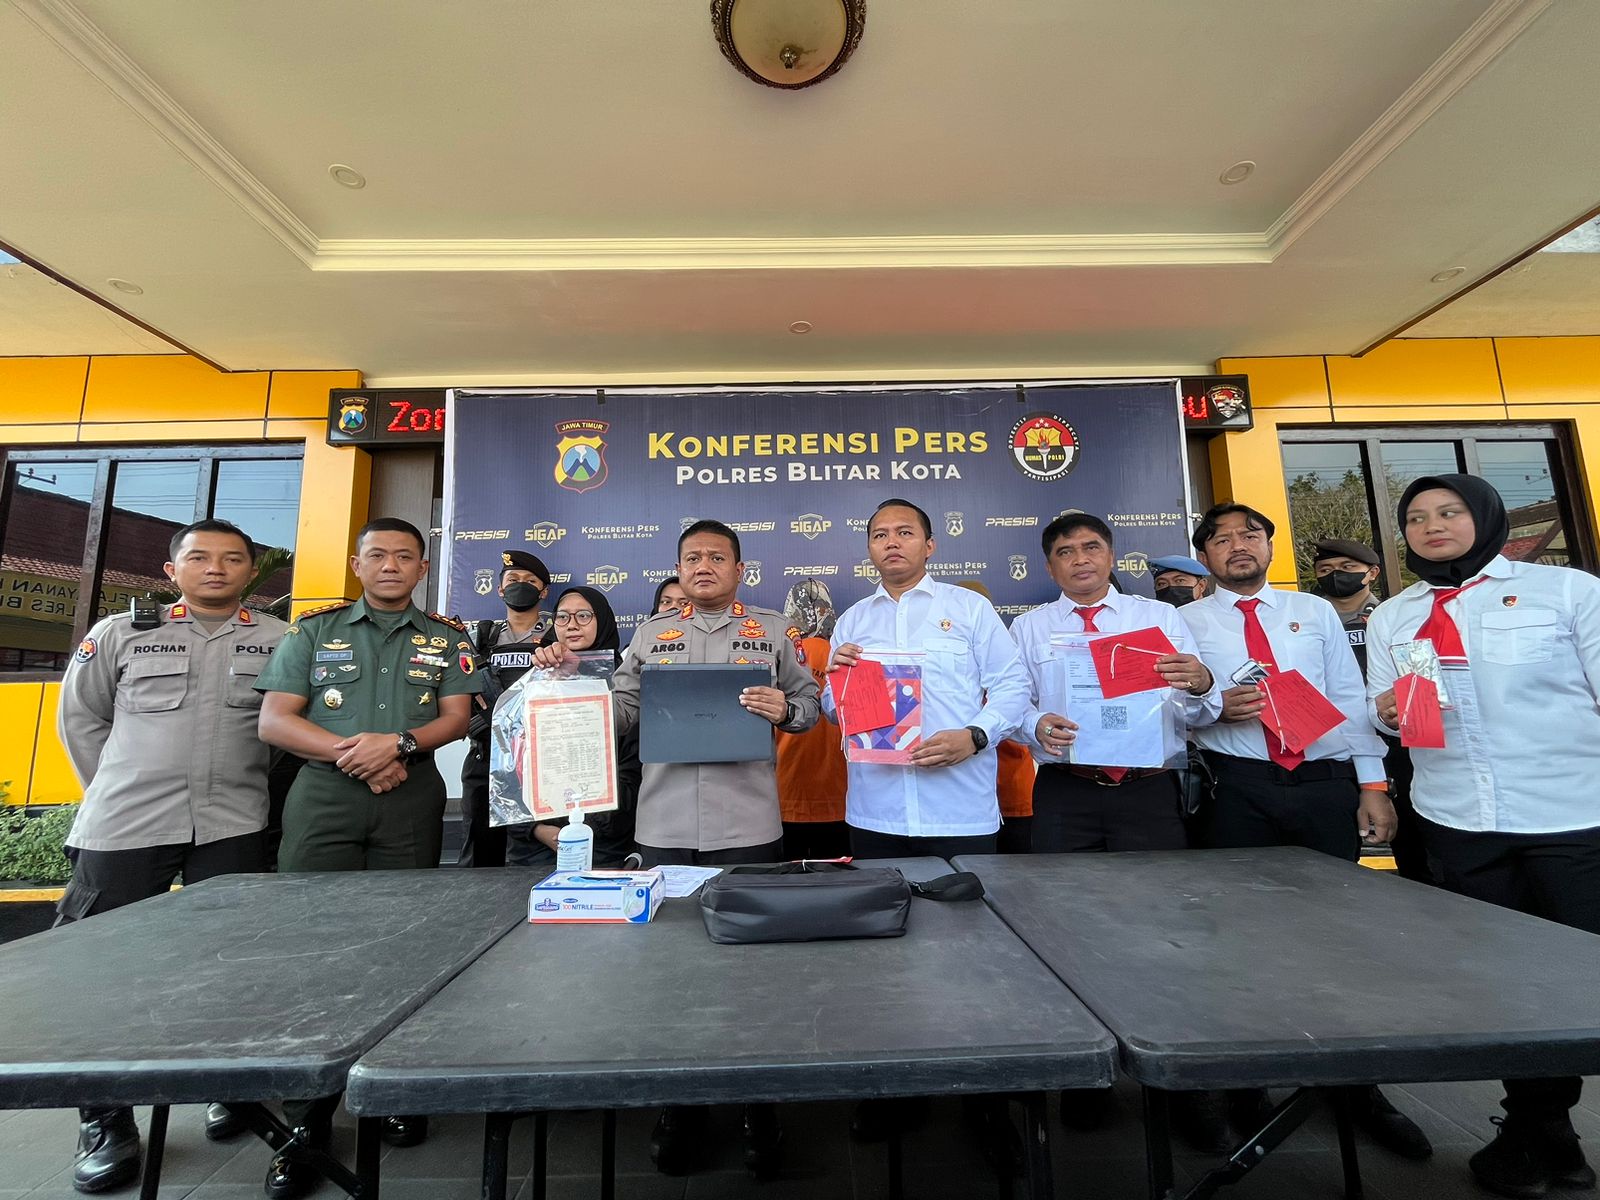 Polres Blitar Kota Ungkap Kasus TPPO, Calon PMI Asal Manado Berhasil Diselamatkan